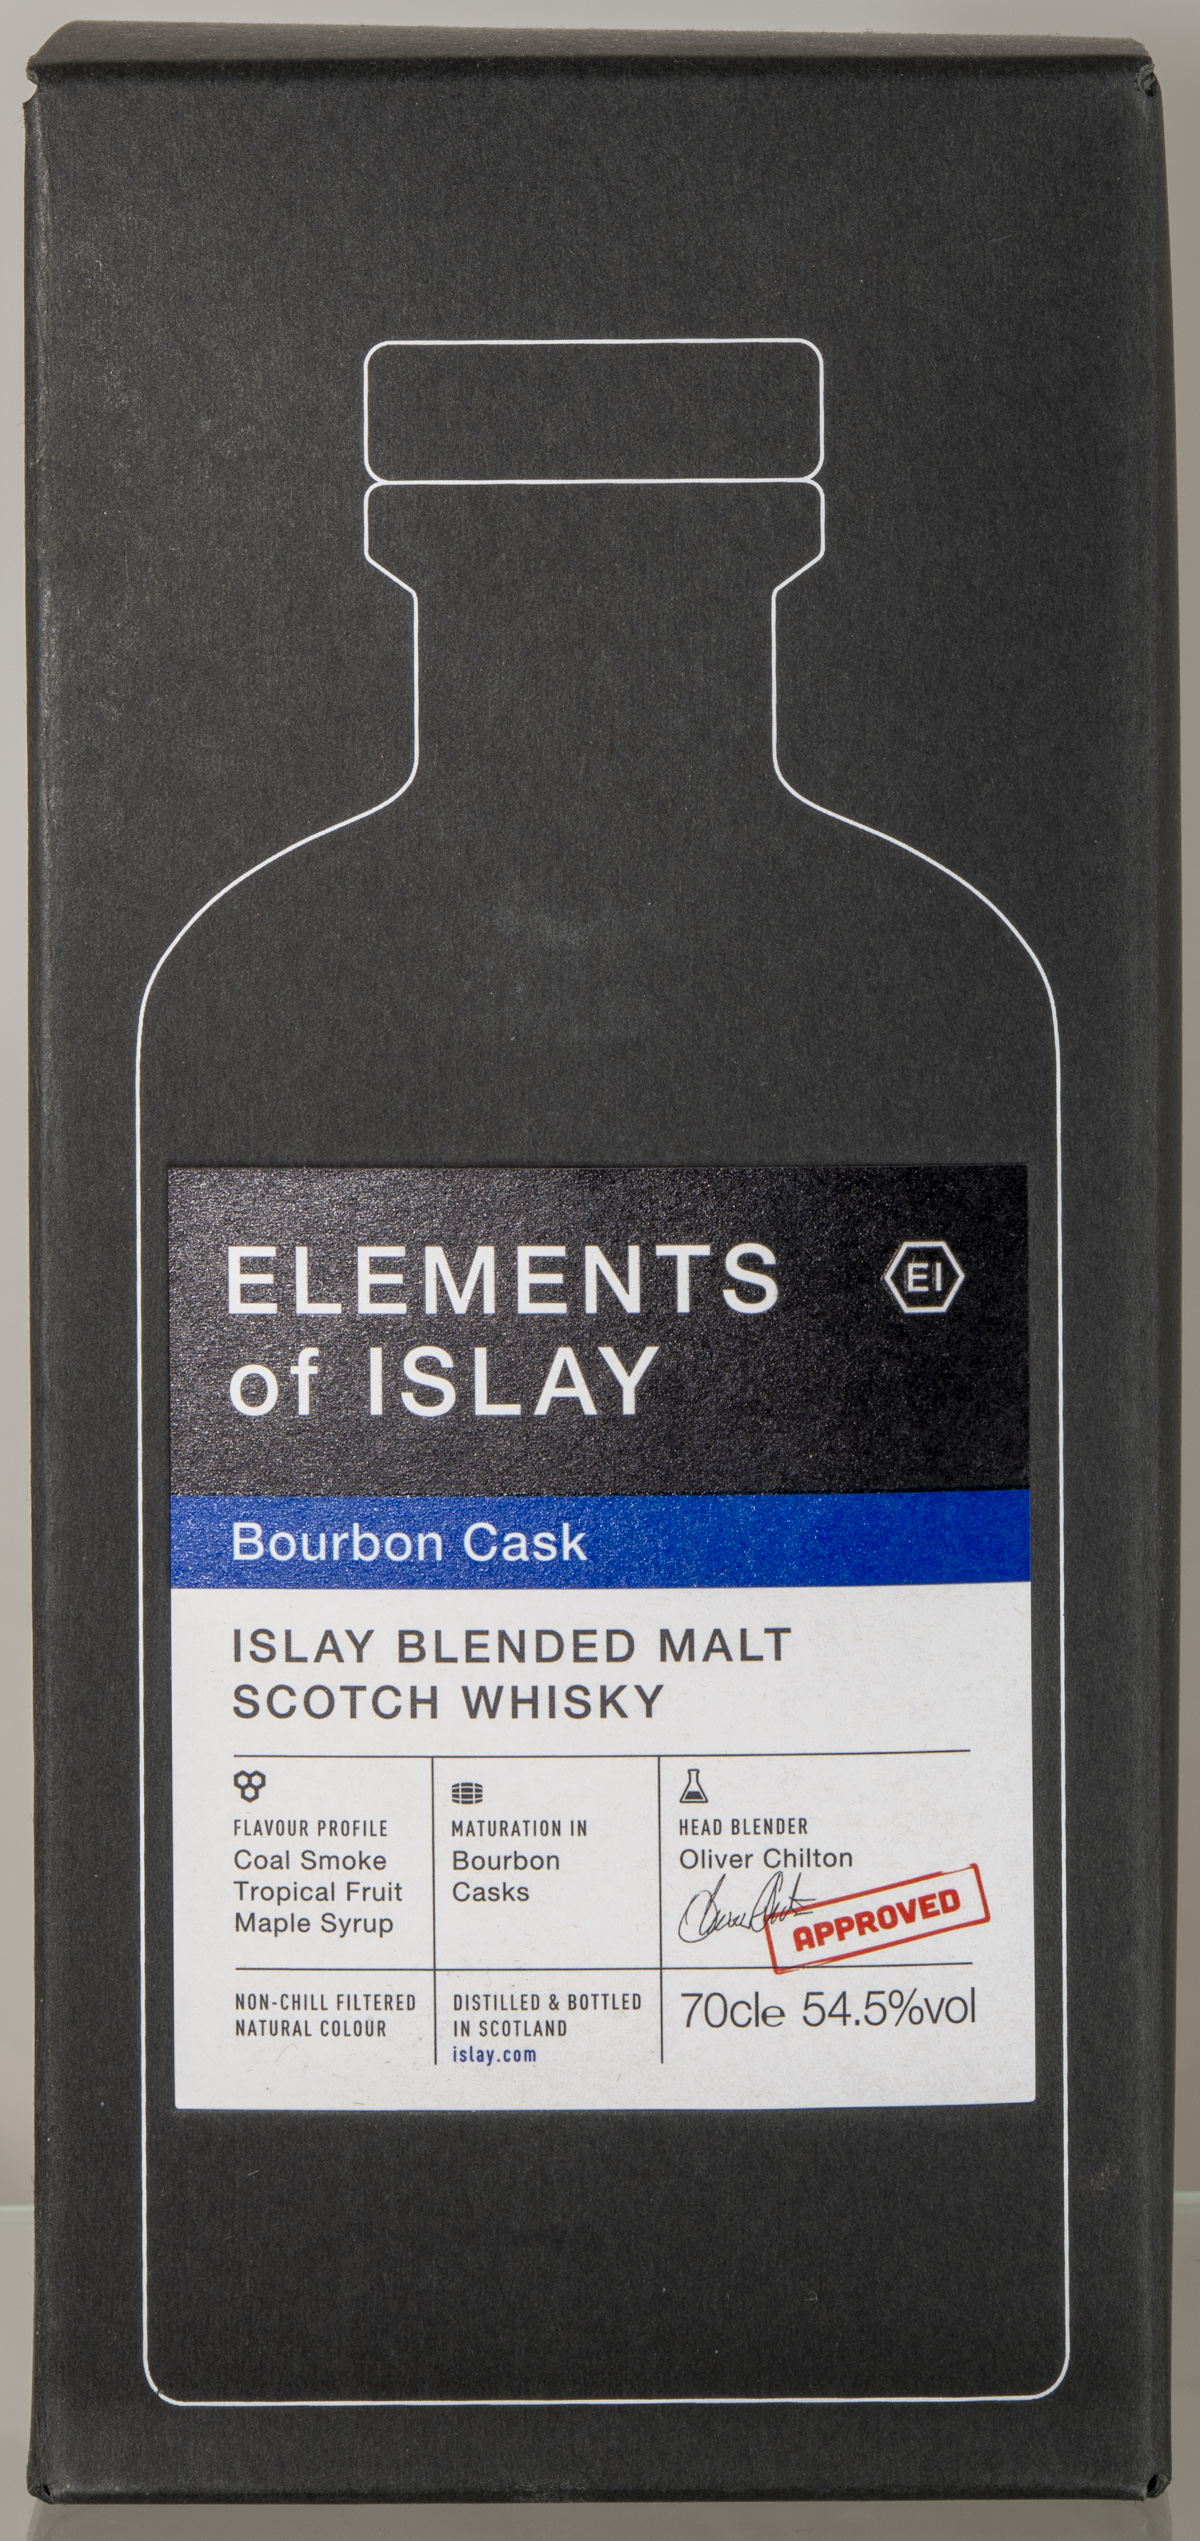 Billede: D85_8312 - Elements of Islay - Bourbon Cask - box front.jpg